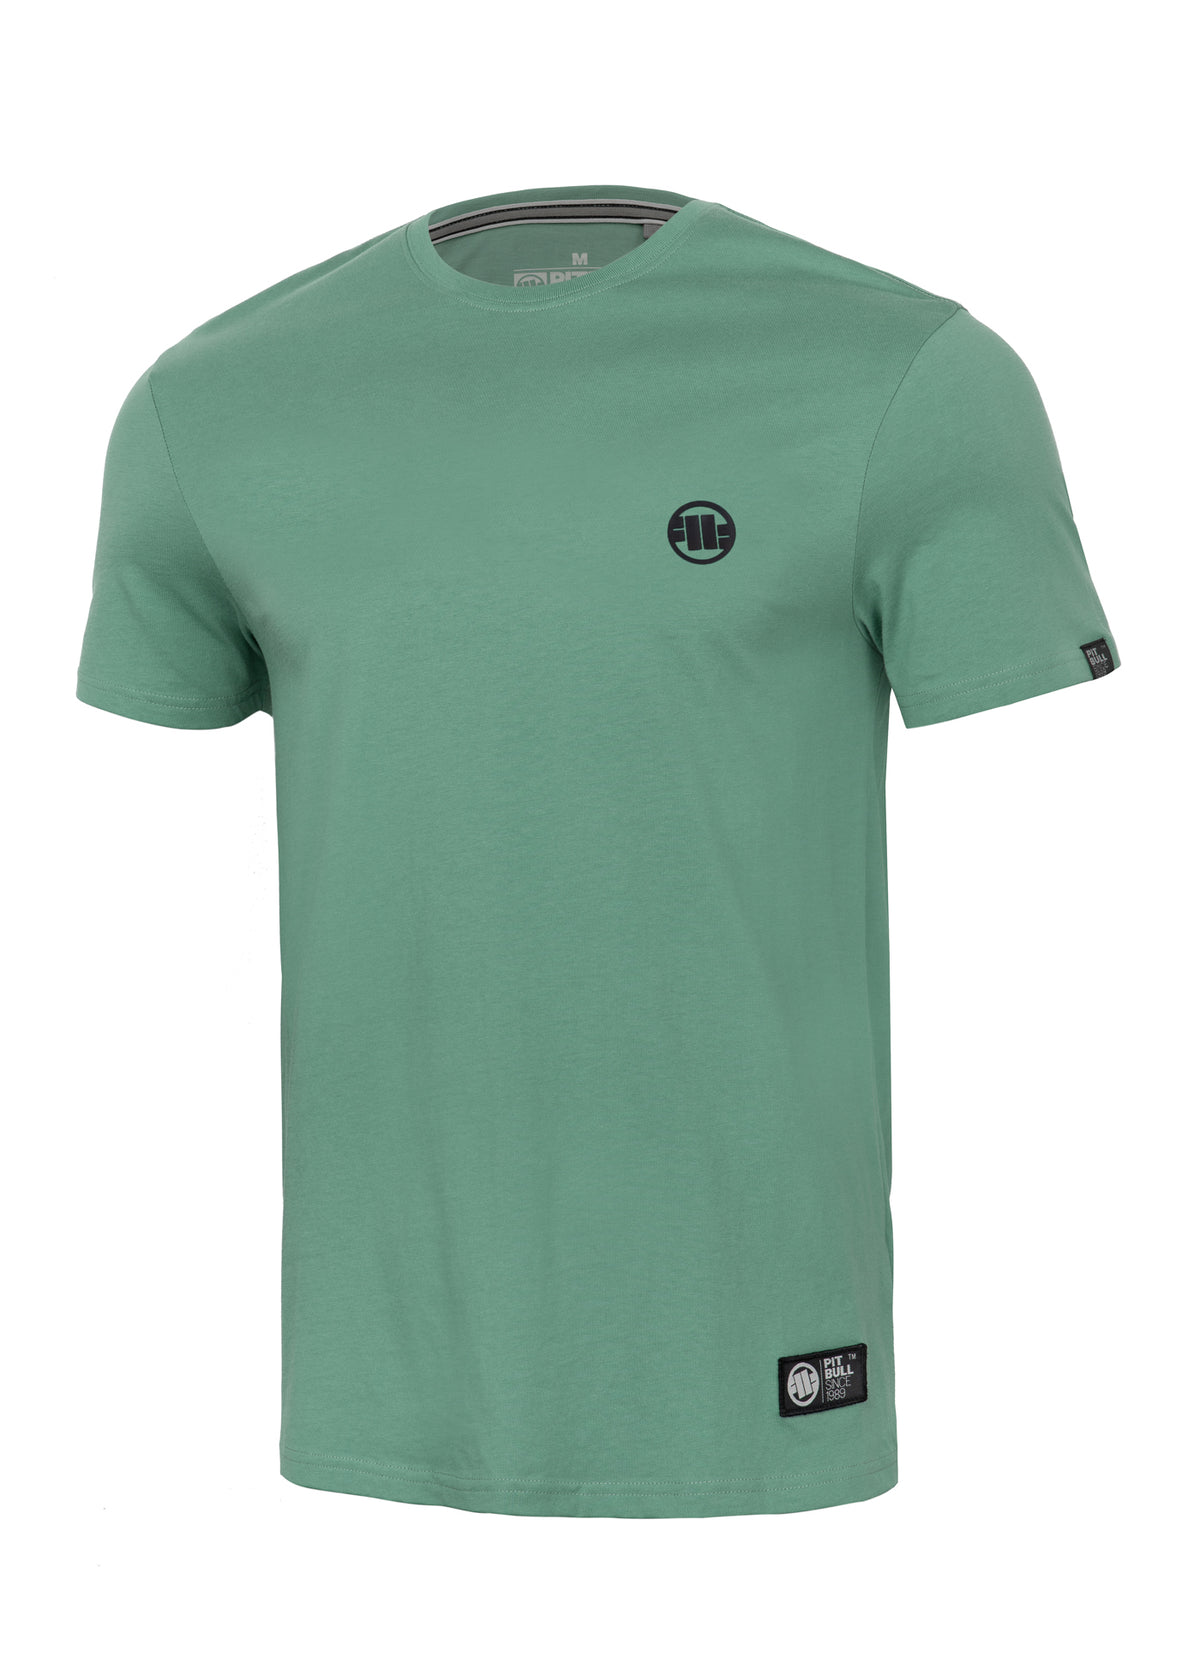 SMALL LOGO Lightweight Mint T-shirt - Pitbullstore.eu